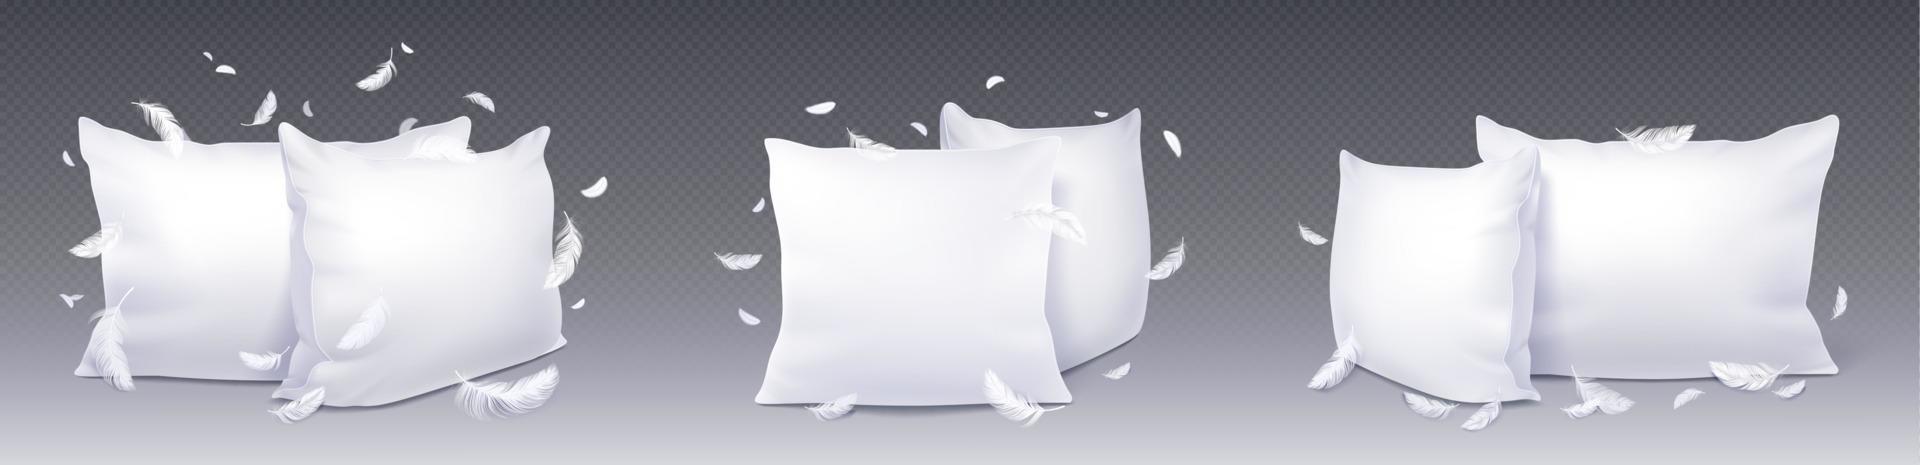 blanco cuadrado almohada realista, parte superior lado ver vector